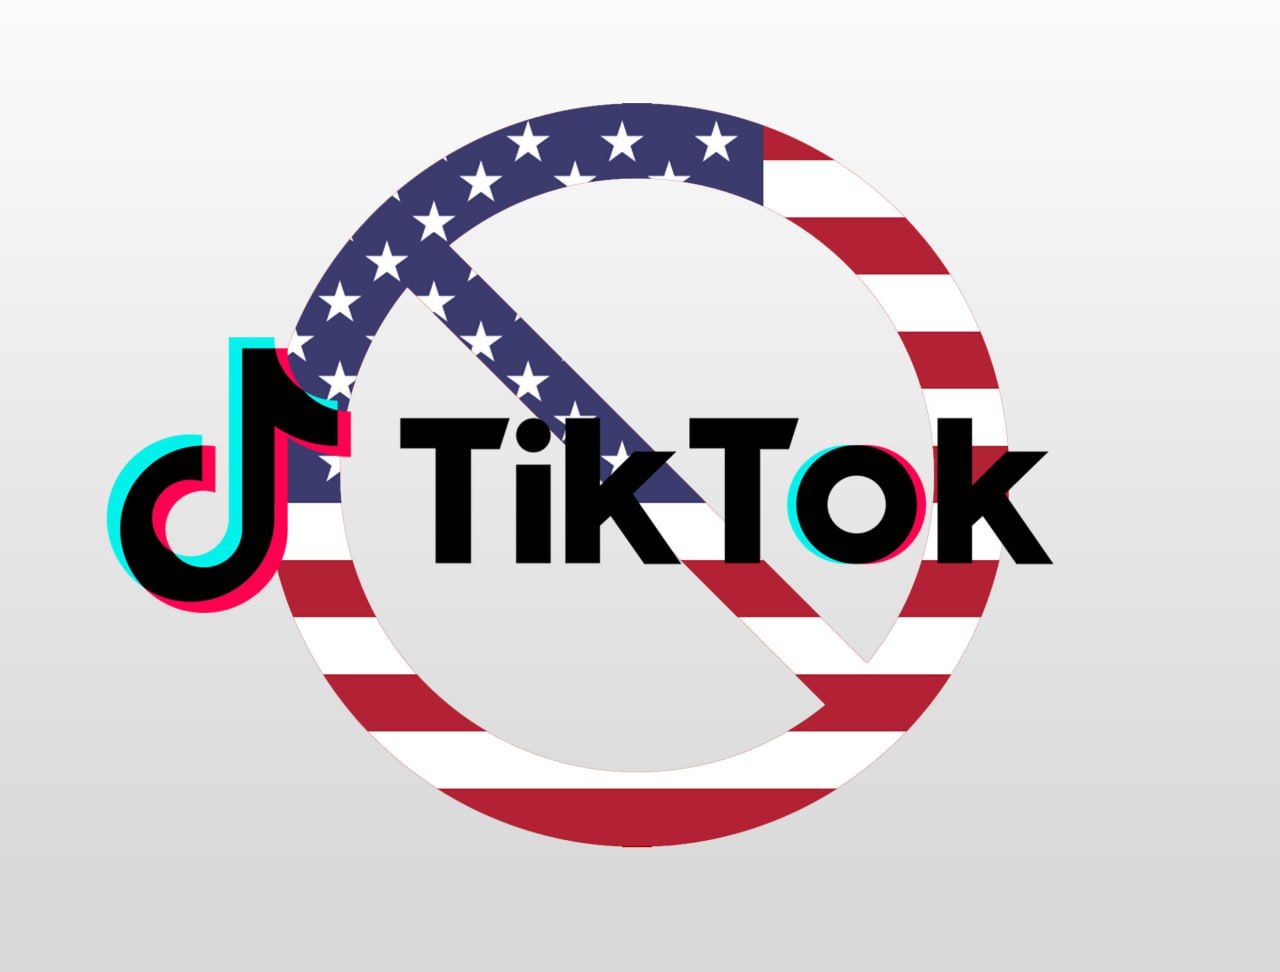 Zdjęcie przedstawia symbol zakazu, który jest tekstury flagi USA, nad symbolem jest logo aplikacji TikTok